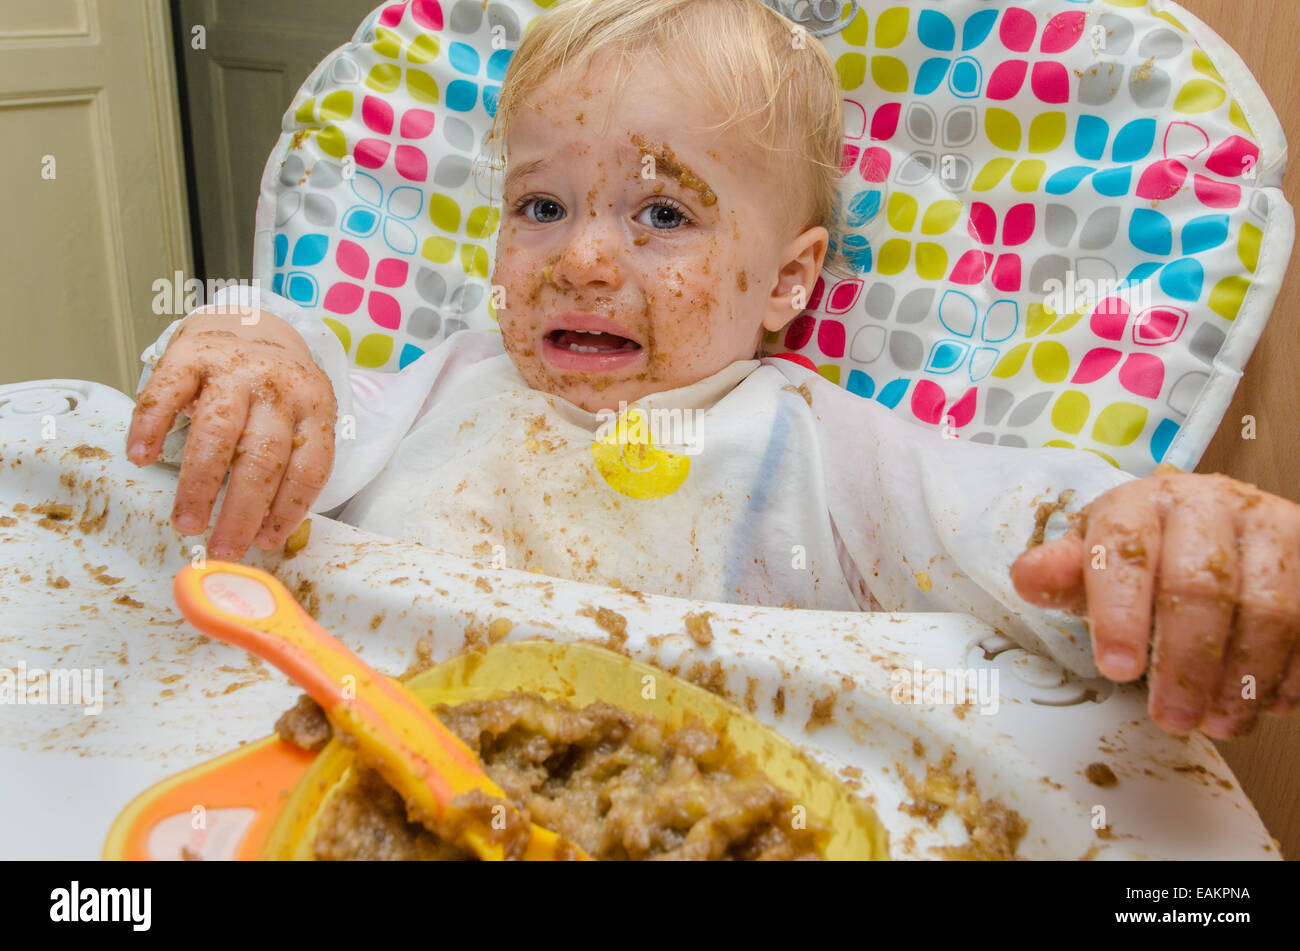 Un niño (ca. 18 meses de edad) hace una terrible lío de su comida. Foto de stock